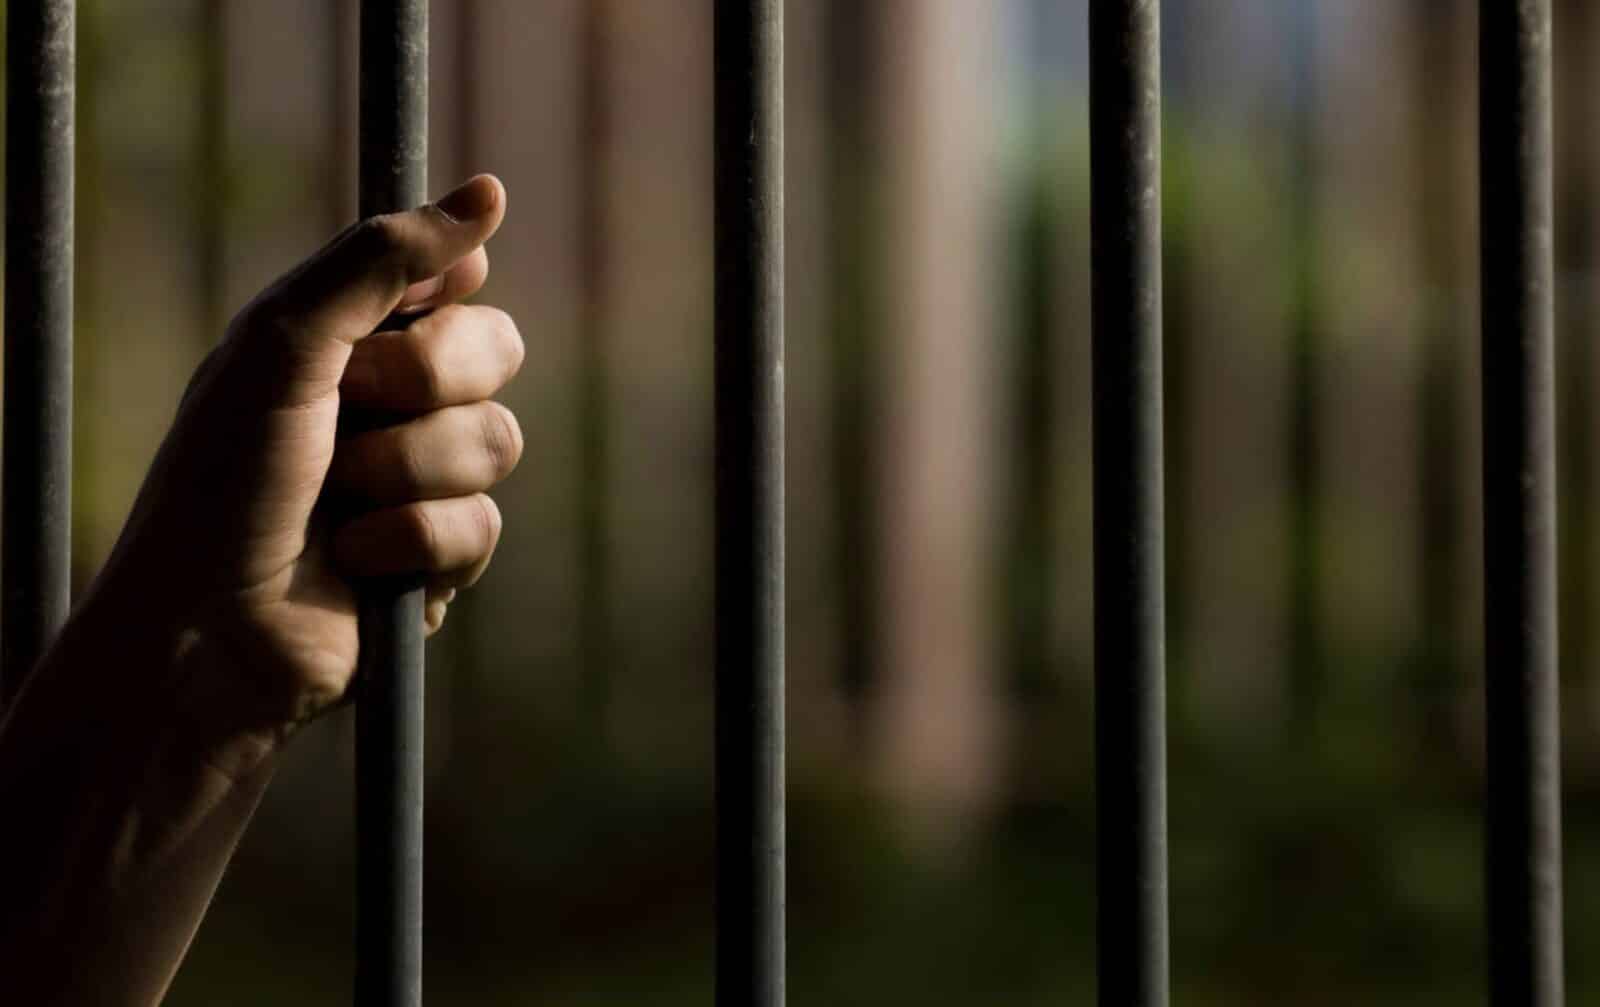 الإمارات العربية المتحدة: غرامات تصل إلى 50،000 درهم وسجن لإساءة معاملة الأطفال - أخبار